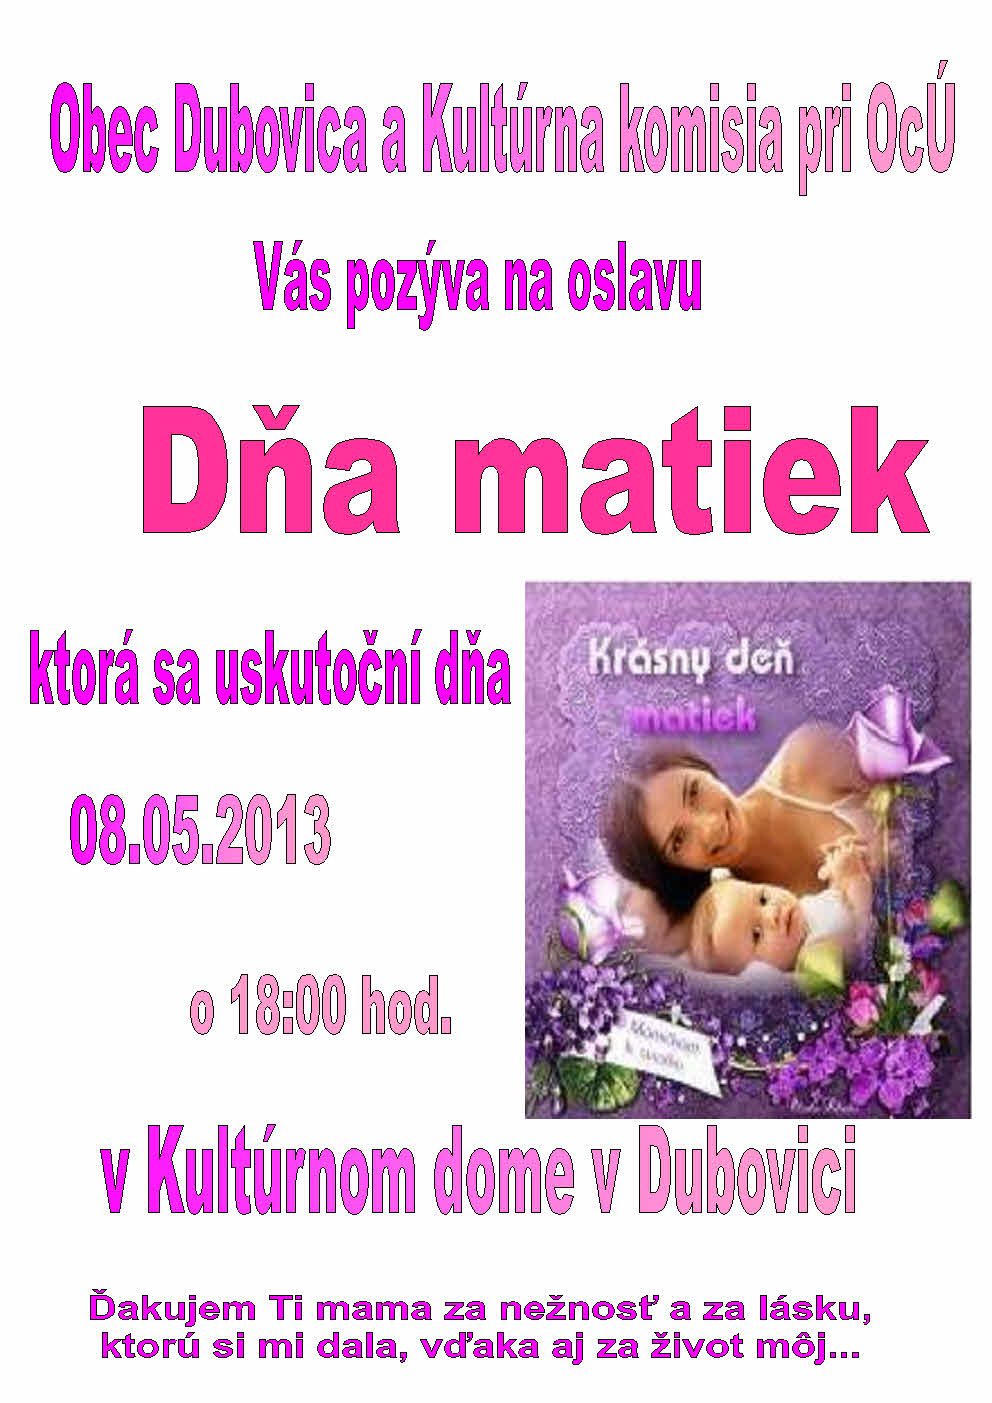 Deň matiek 2013 fialový